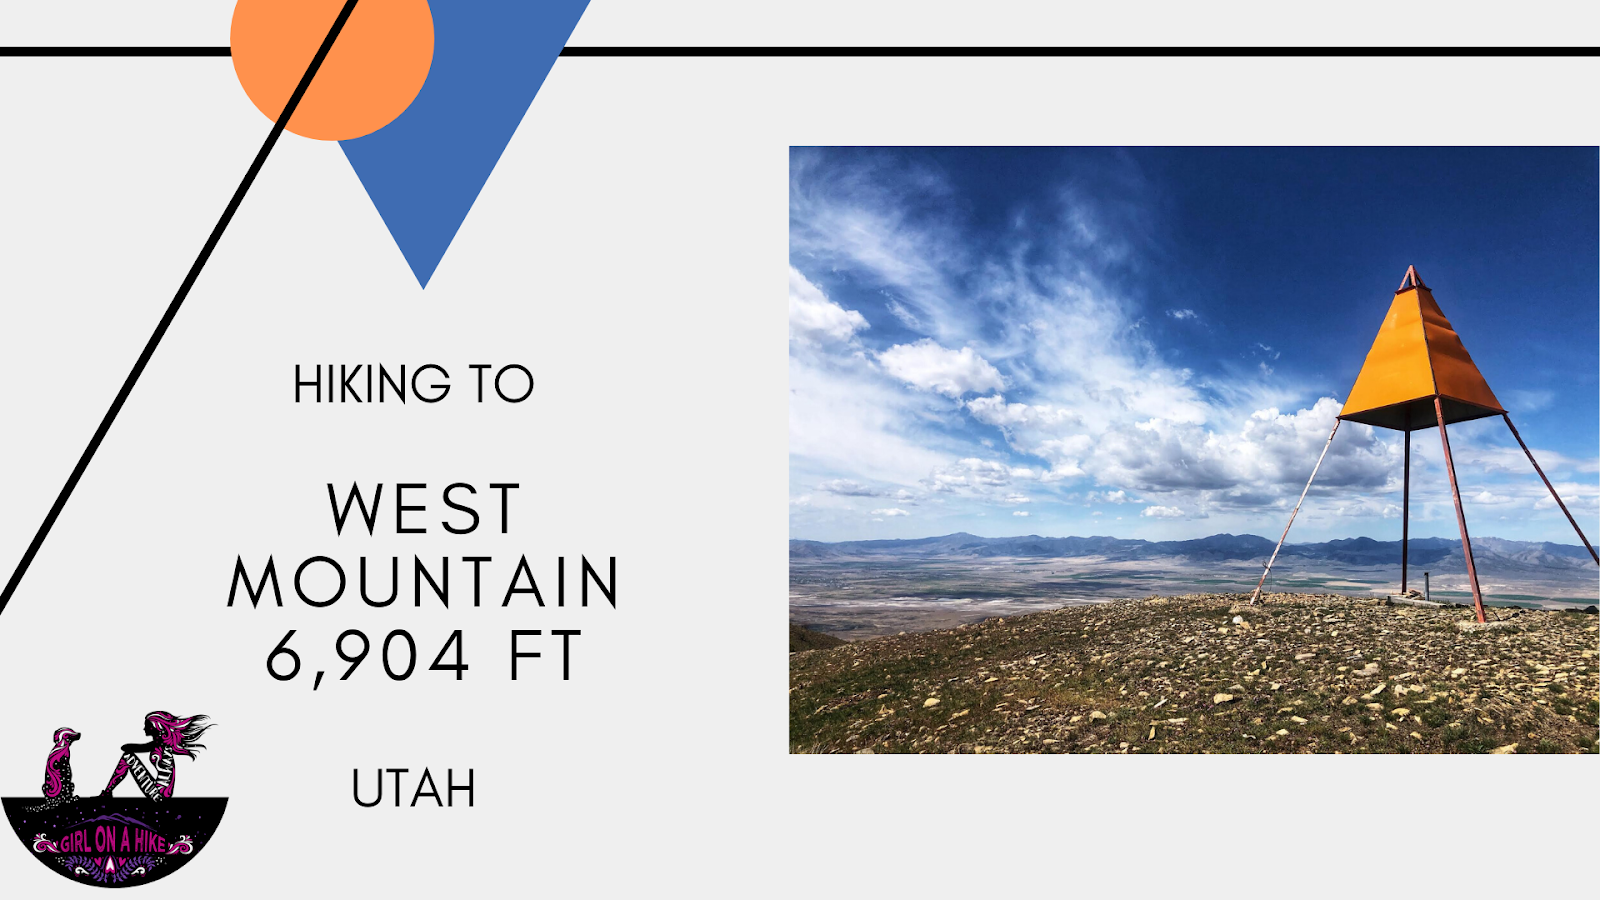 Hiking West Mountain (6,904 ft), Utah